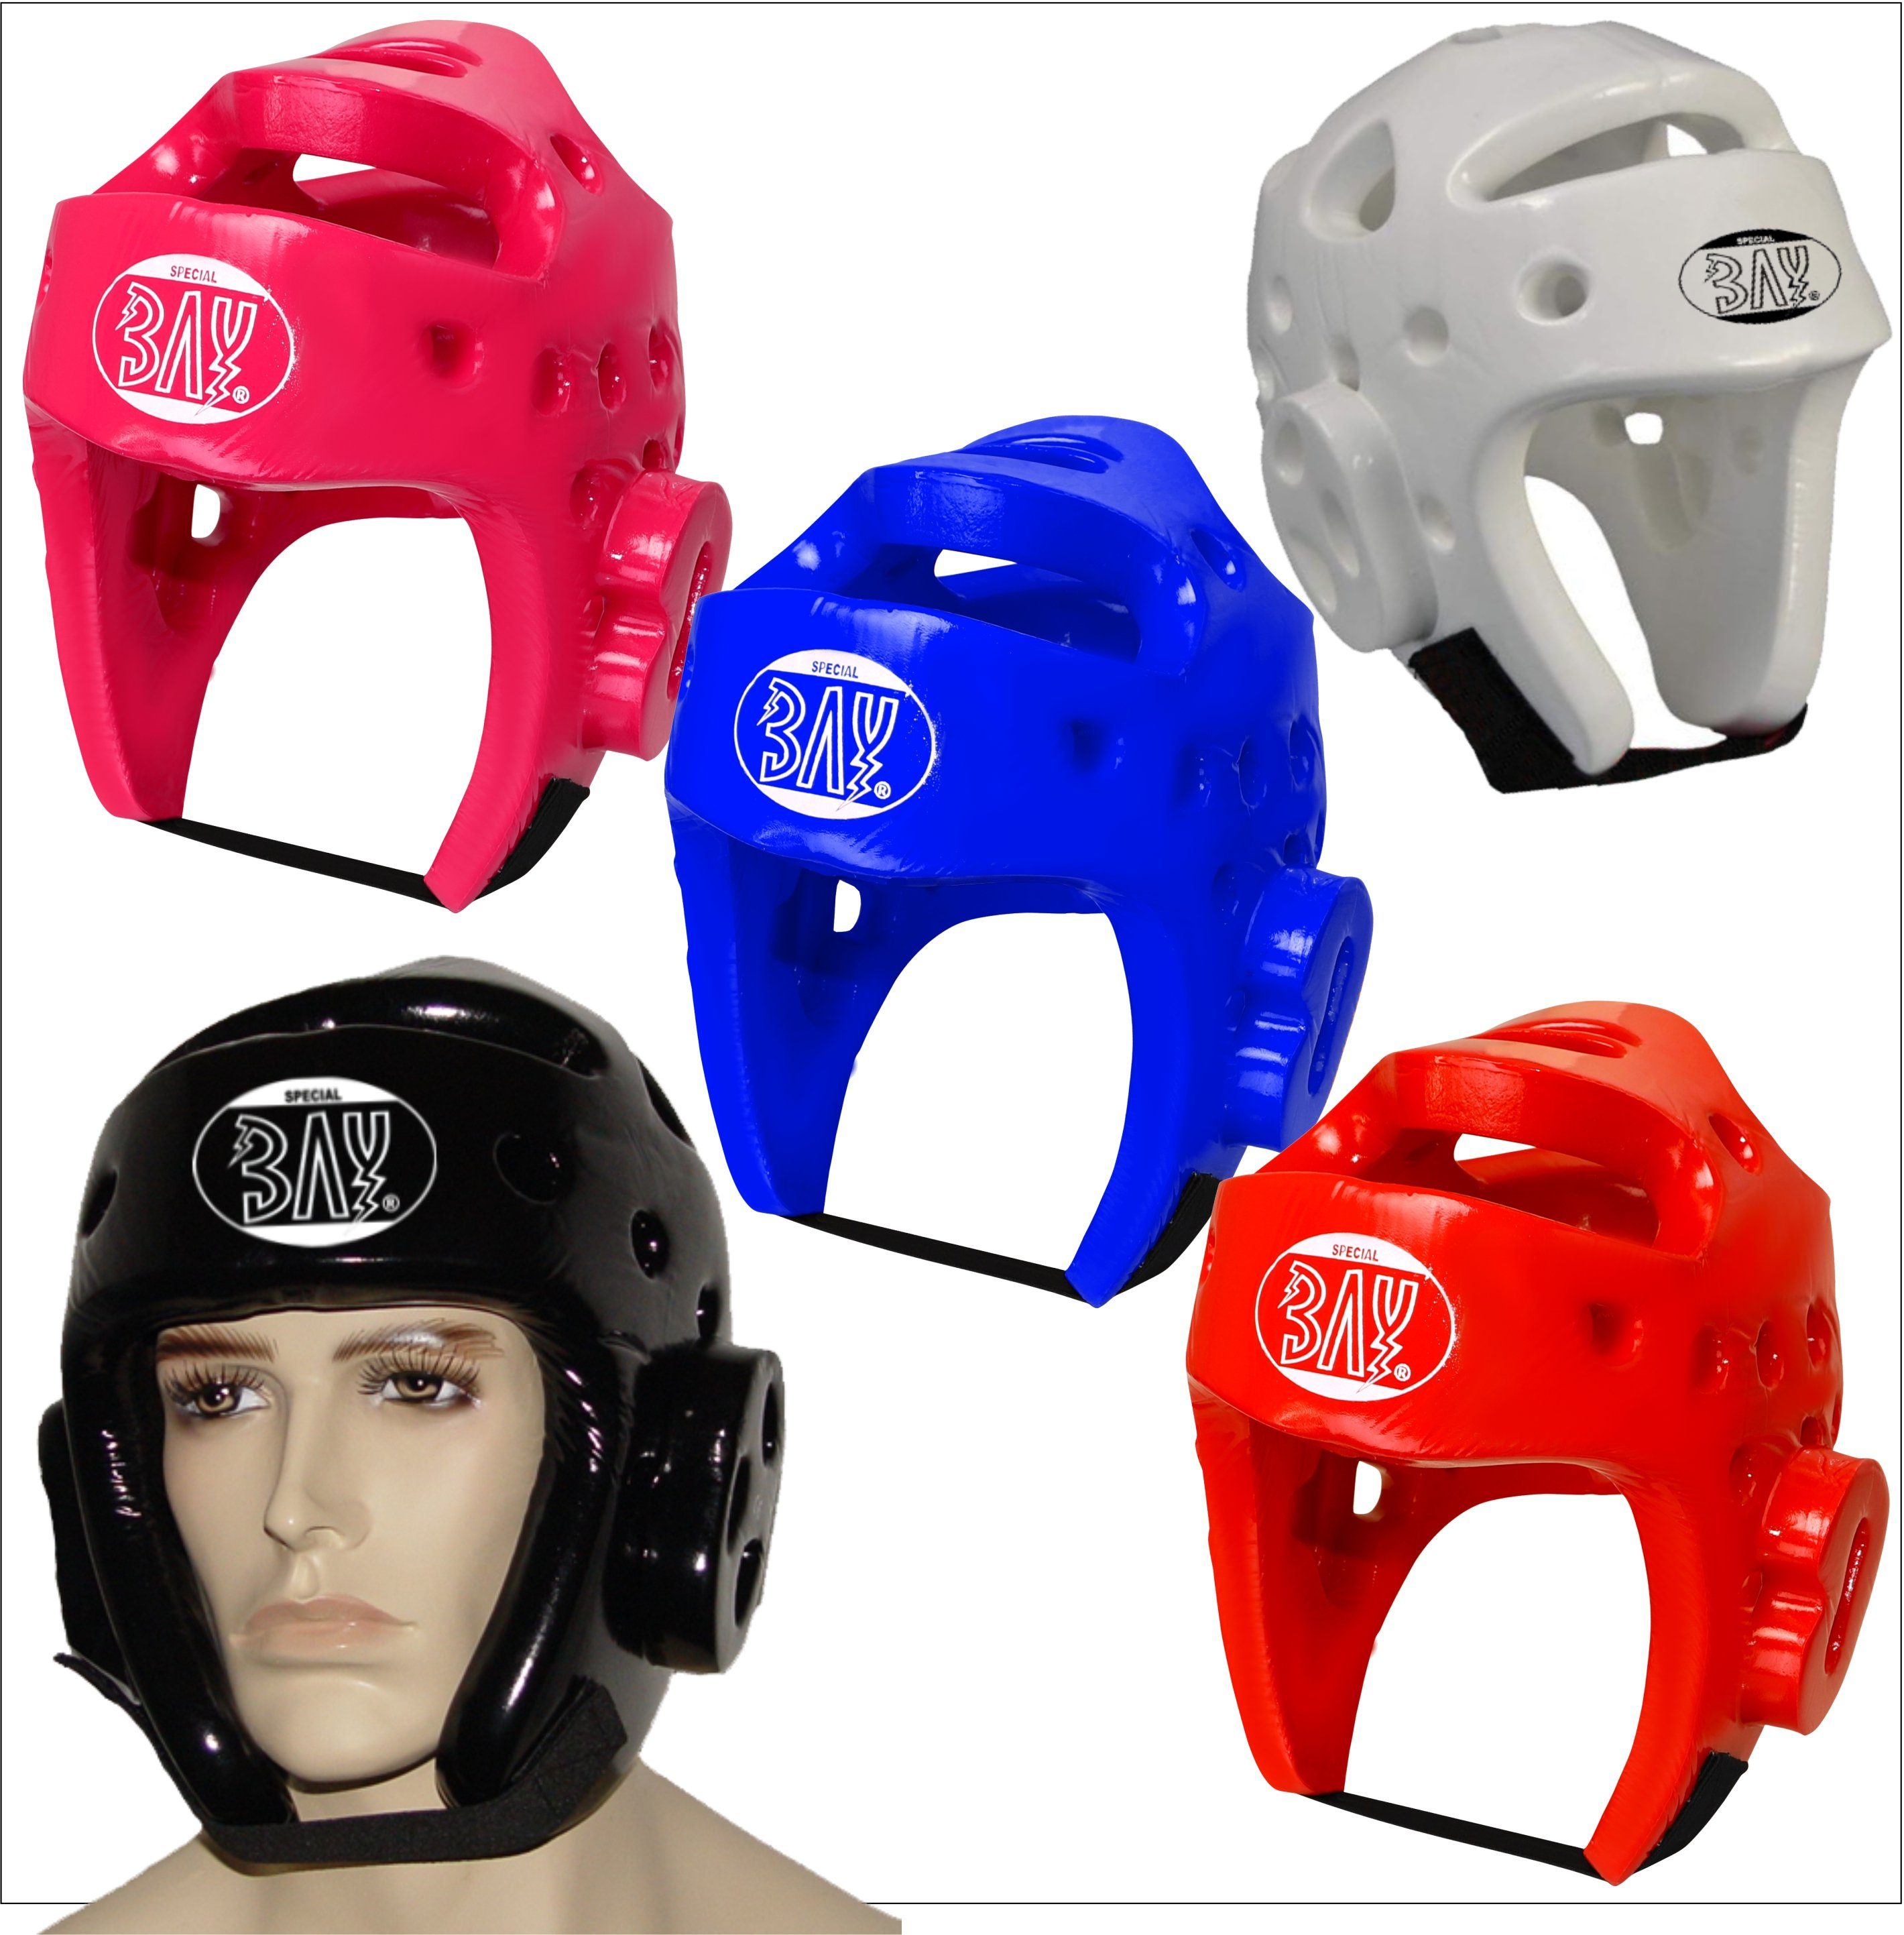 BAY-Sports Kopfschutz Kampfsport Kickboxen Taekwondo leicht, besonders abwaschbar, XS Erwachsee, Lack Schaumstoff - Kopfschutz, Kinder XL und